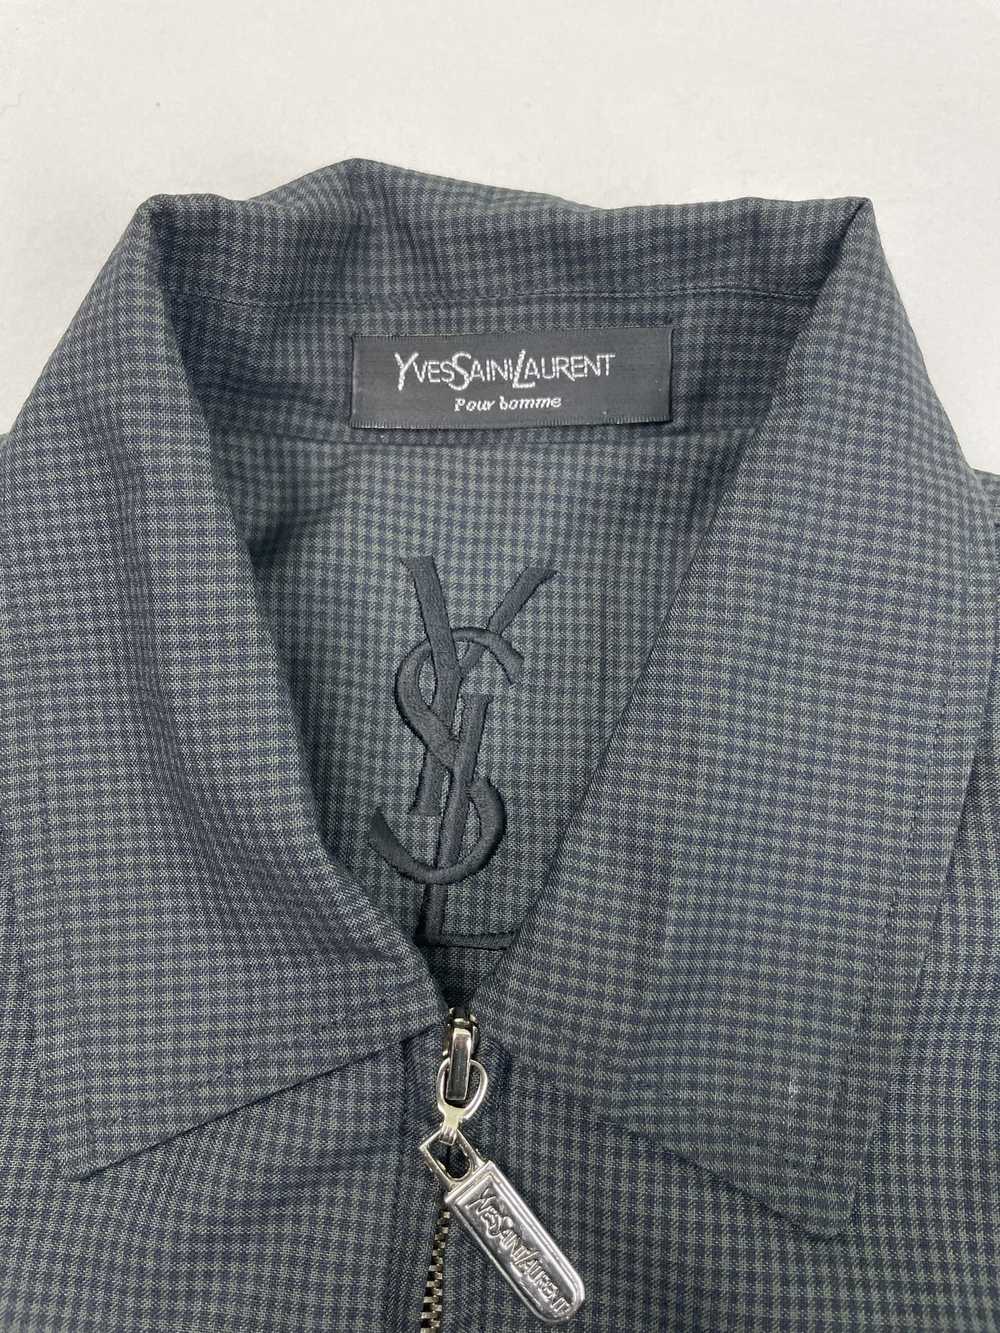 Ysl Pour Homme Vintage YSL Zip Up Jacket Designer… - image 3